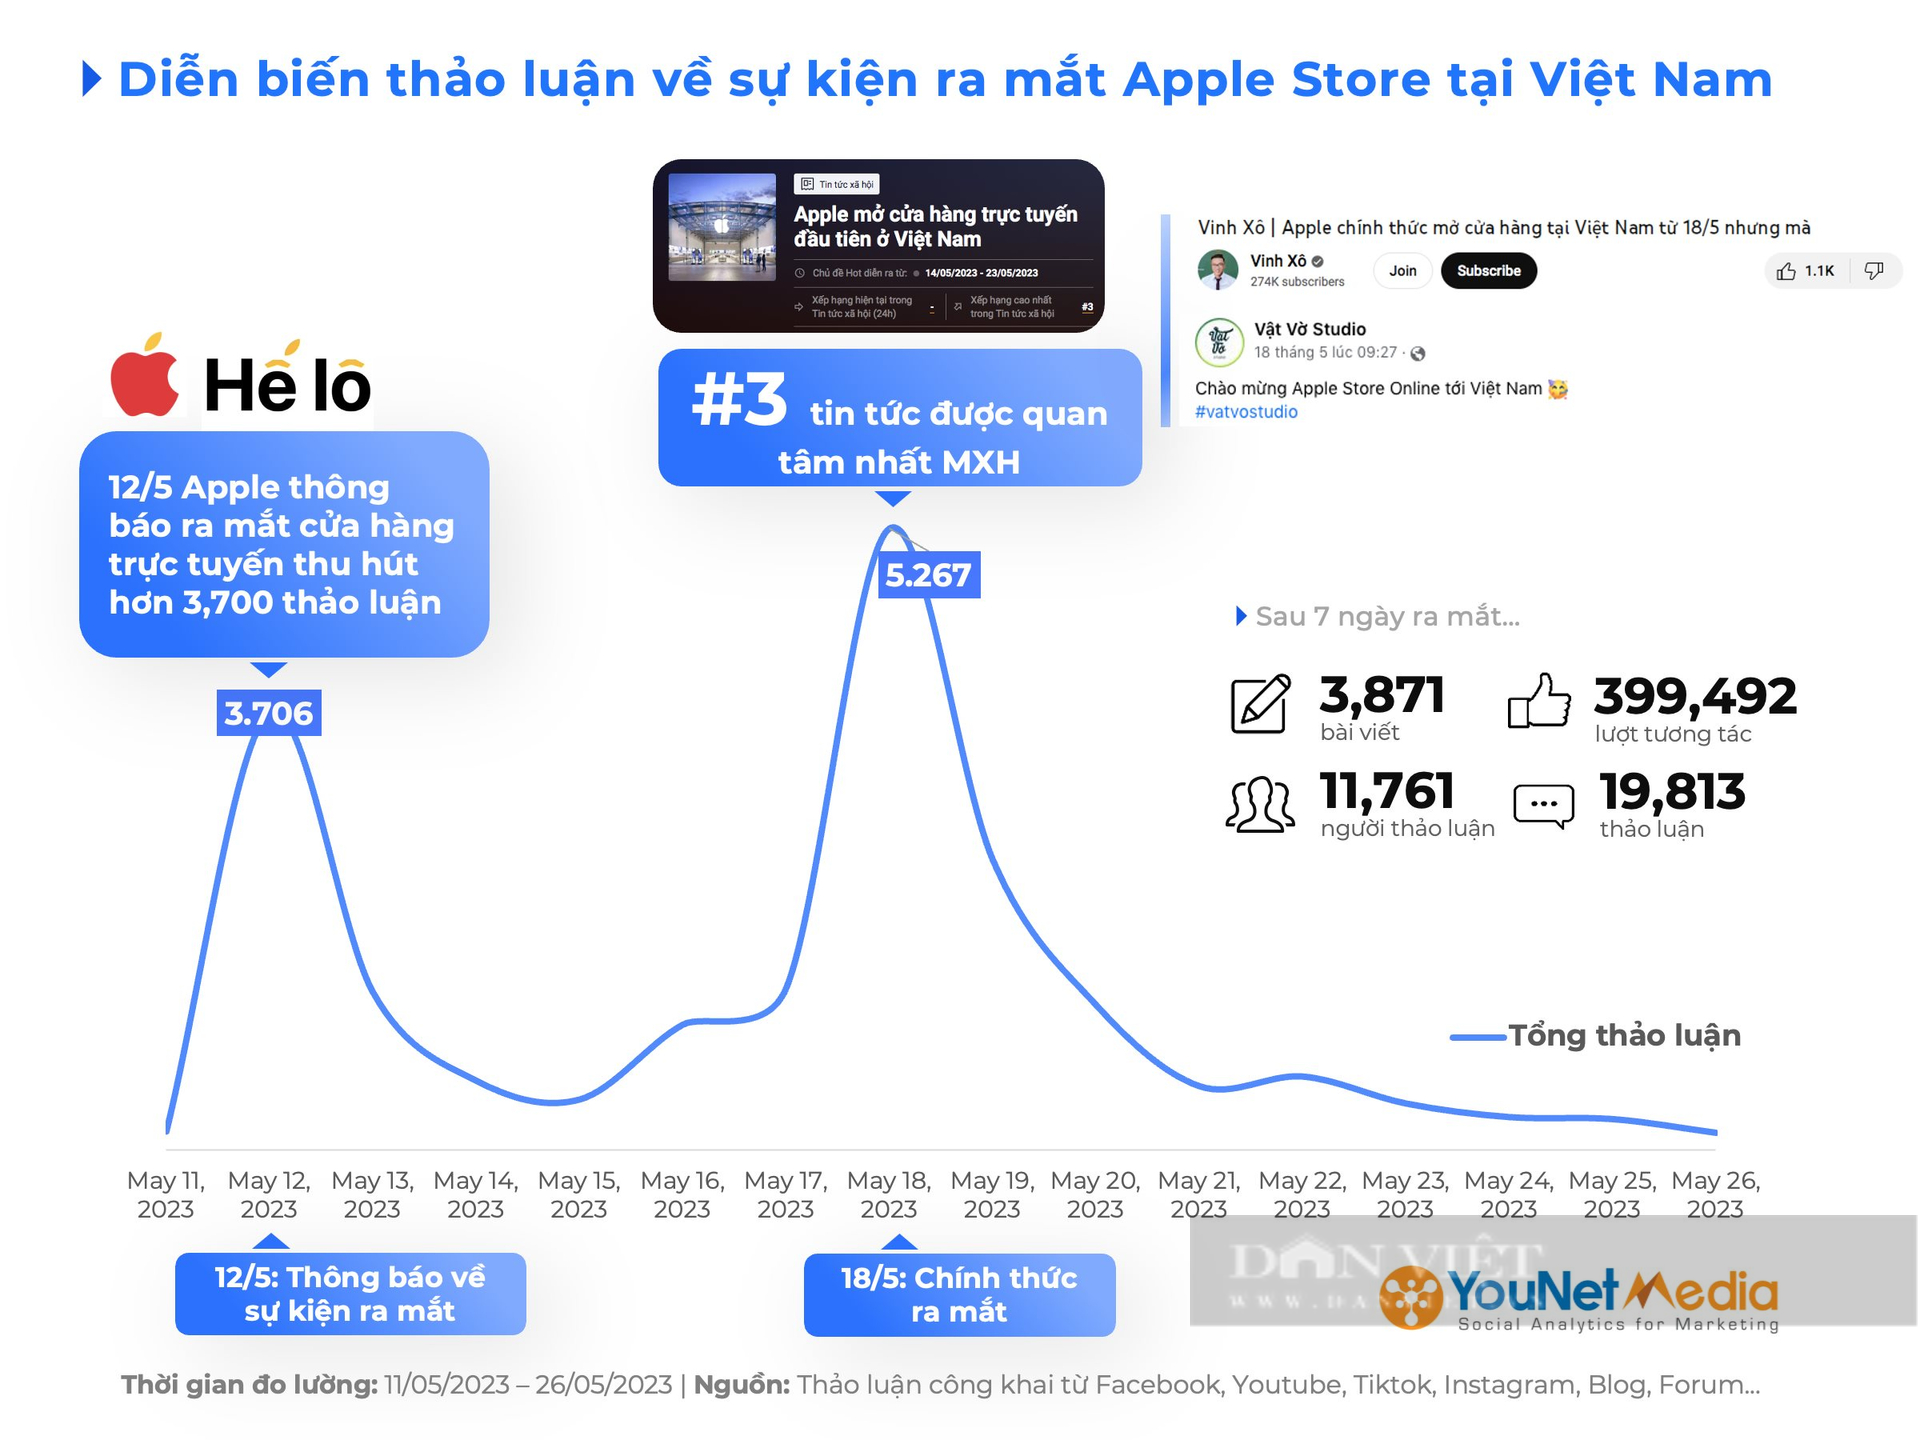 Cửa hàng trực tuyến Apple Việt Nam sau 2 tuần mở cửa: Hiệu quả có như kỳ vọng? - Ảnh 2.